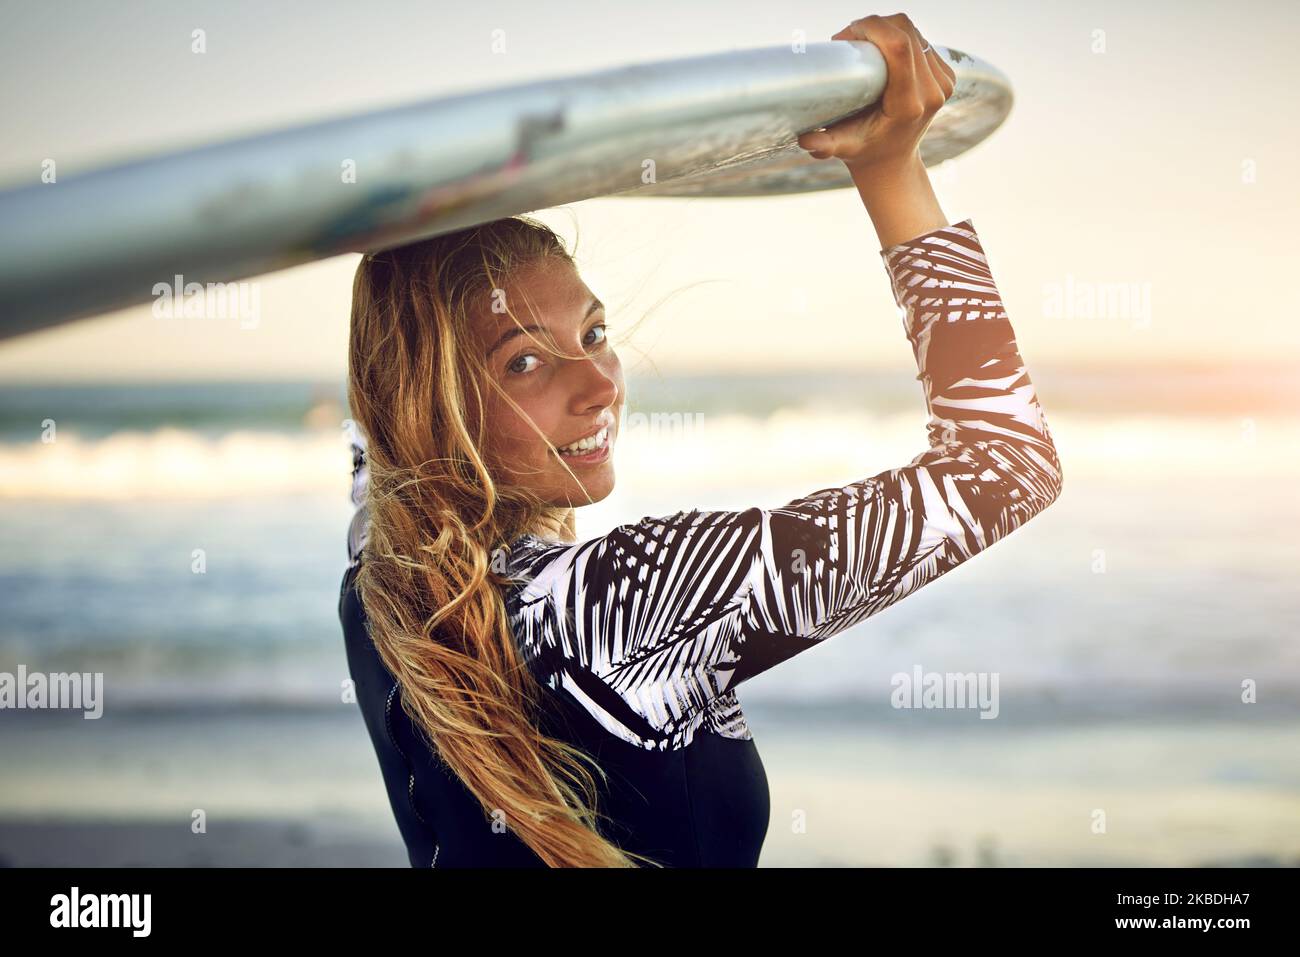 Unisciti a me. Ritratto retroverso di una giovane e attraente surfista in piedi con la sua tavola da surf che guarda sopra l'oceano. Foto Stock